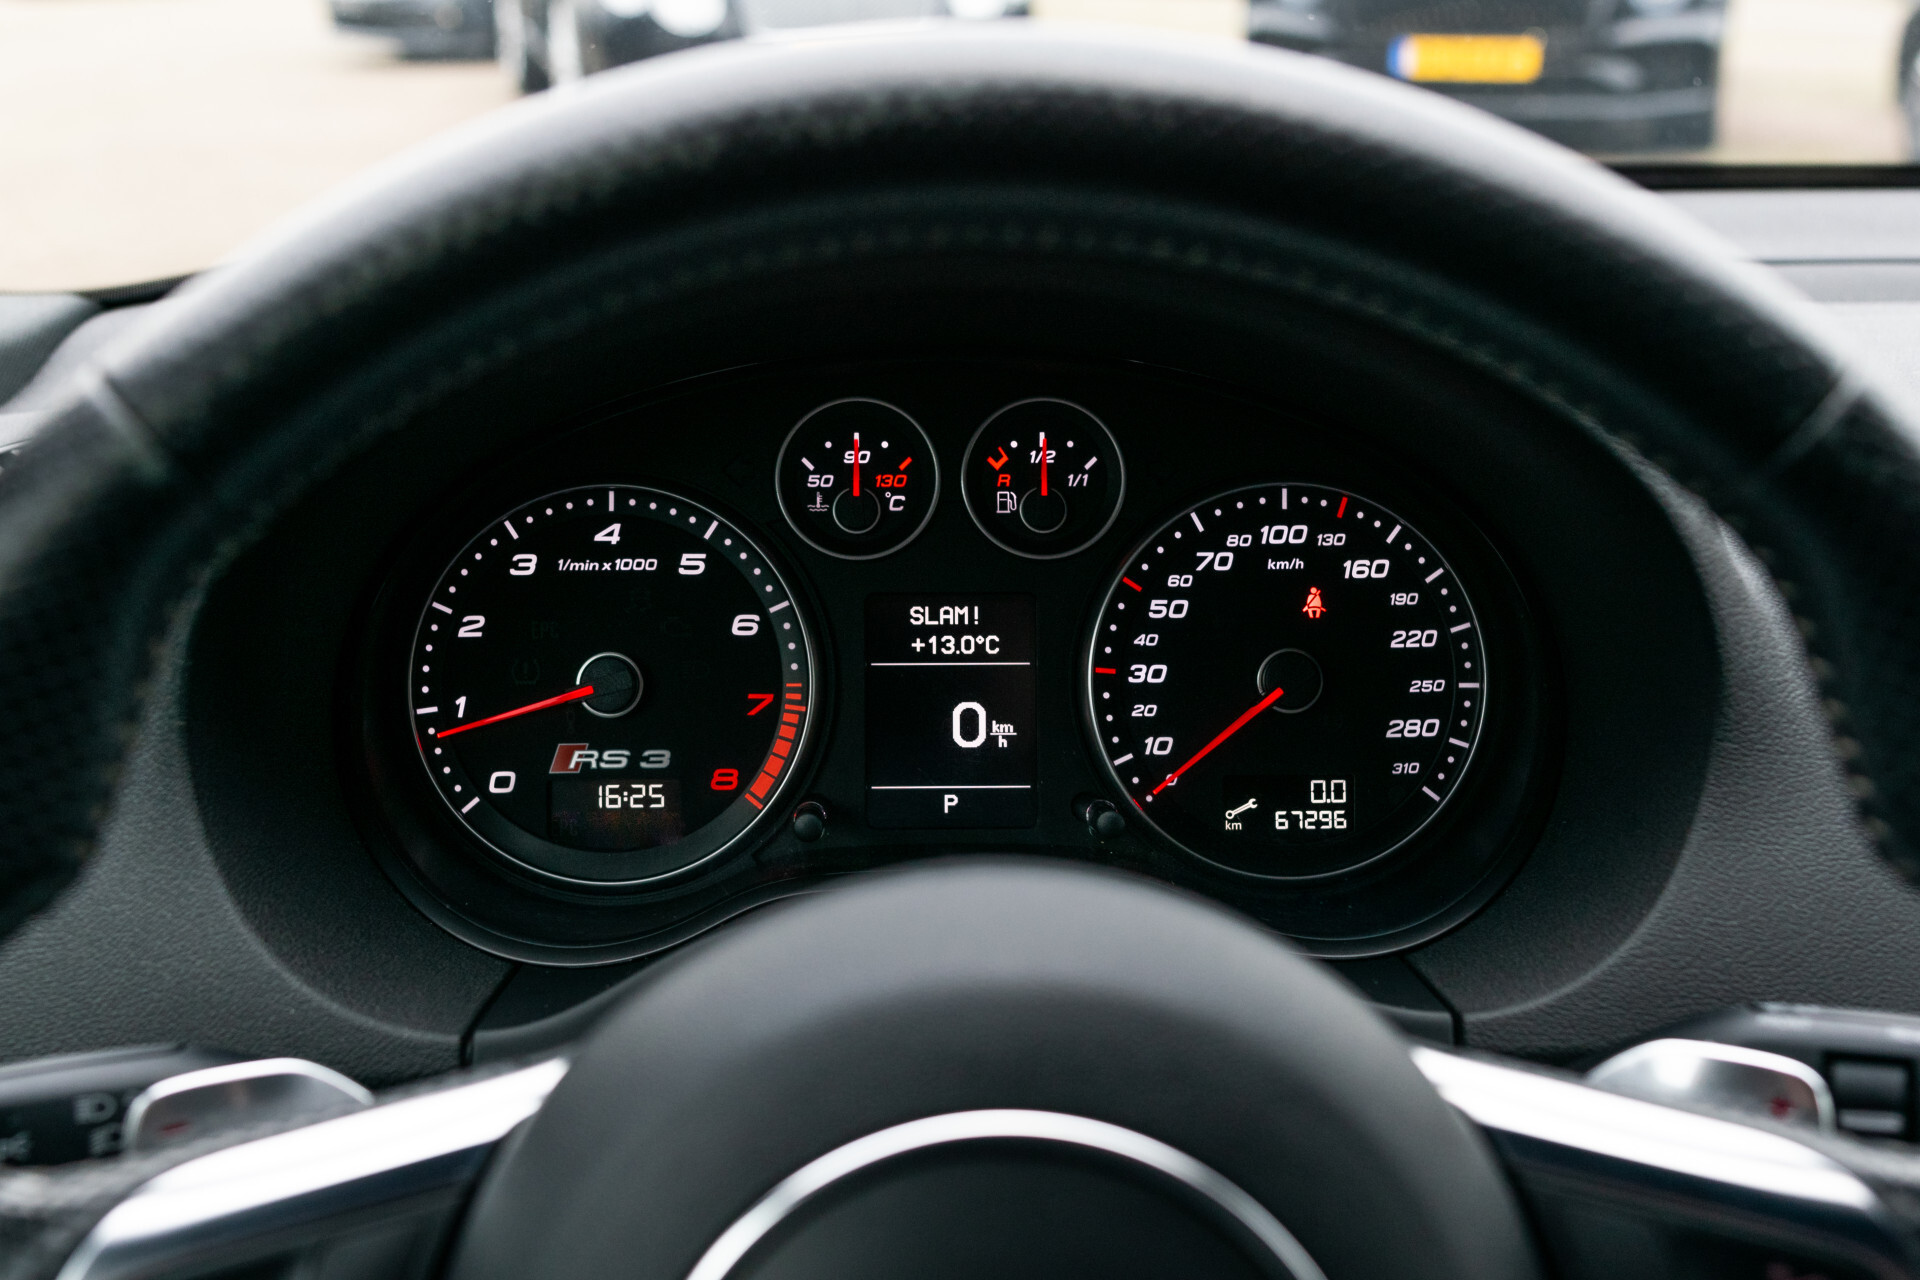 Audi RS3 Sportback 2.5 T Quattro 67 dkm|2e eigenaar|New Service|volledige historie Foto 7